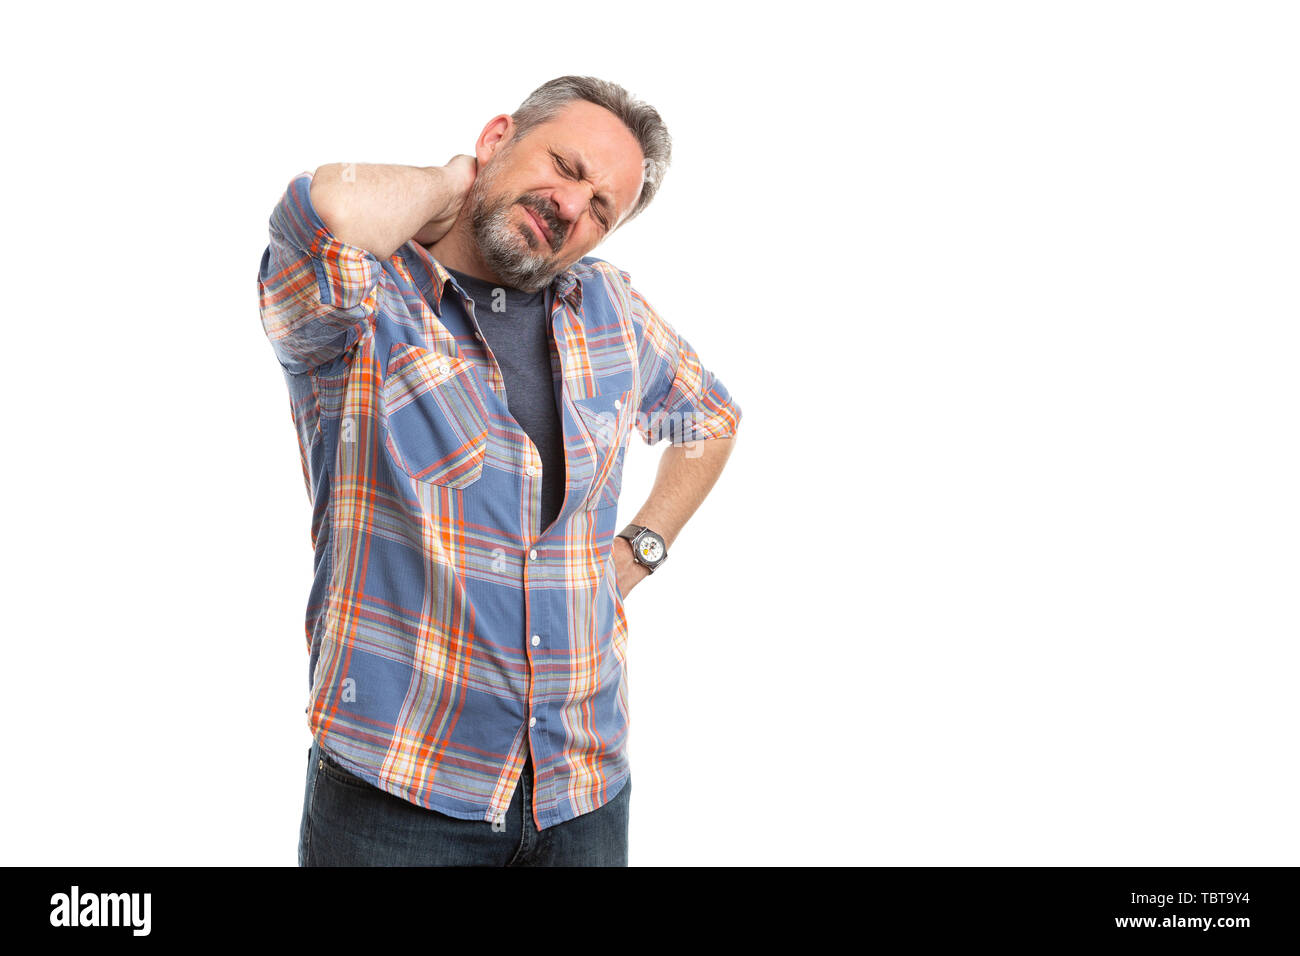 Mann mit verletzten Ausdruck berühren schmerzhafter Nacken hand auf weiße studio Hintergrund isoliert Stockfoto